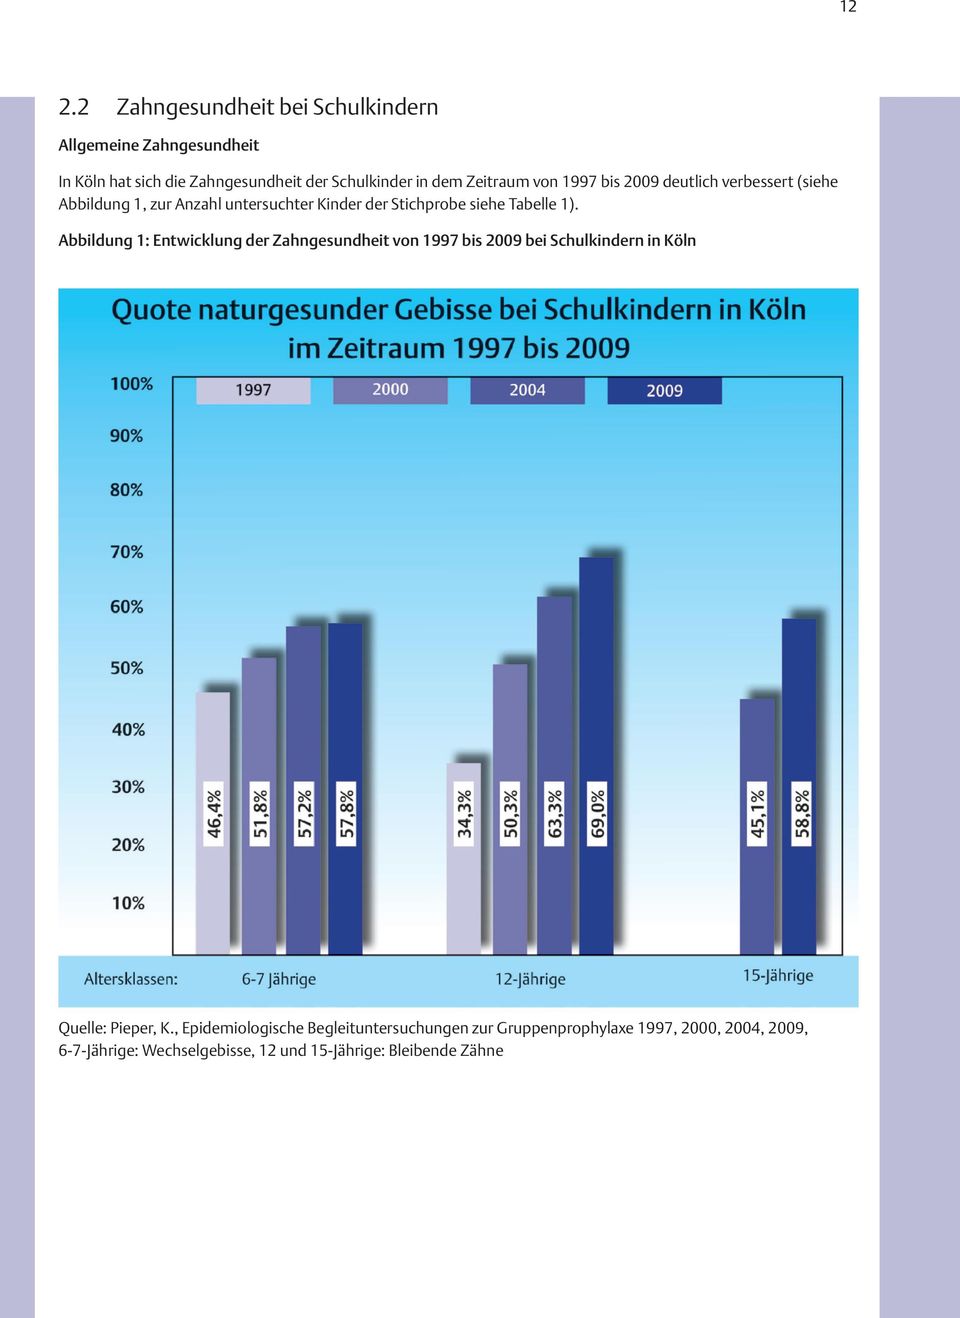 1). Abbildung 1: Entwicklung der Zahngesundheit von 1997 bis 2009 bei Schulkindern in Köln Quelle: Pieper, K.